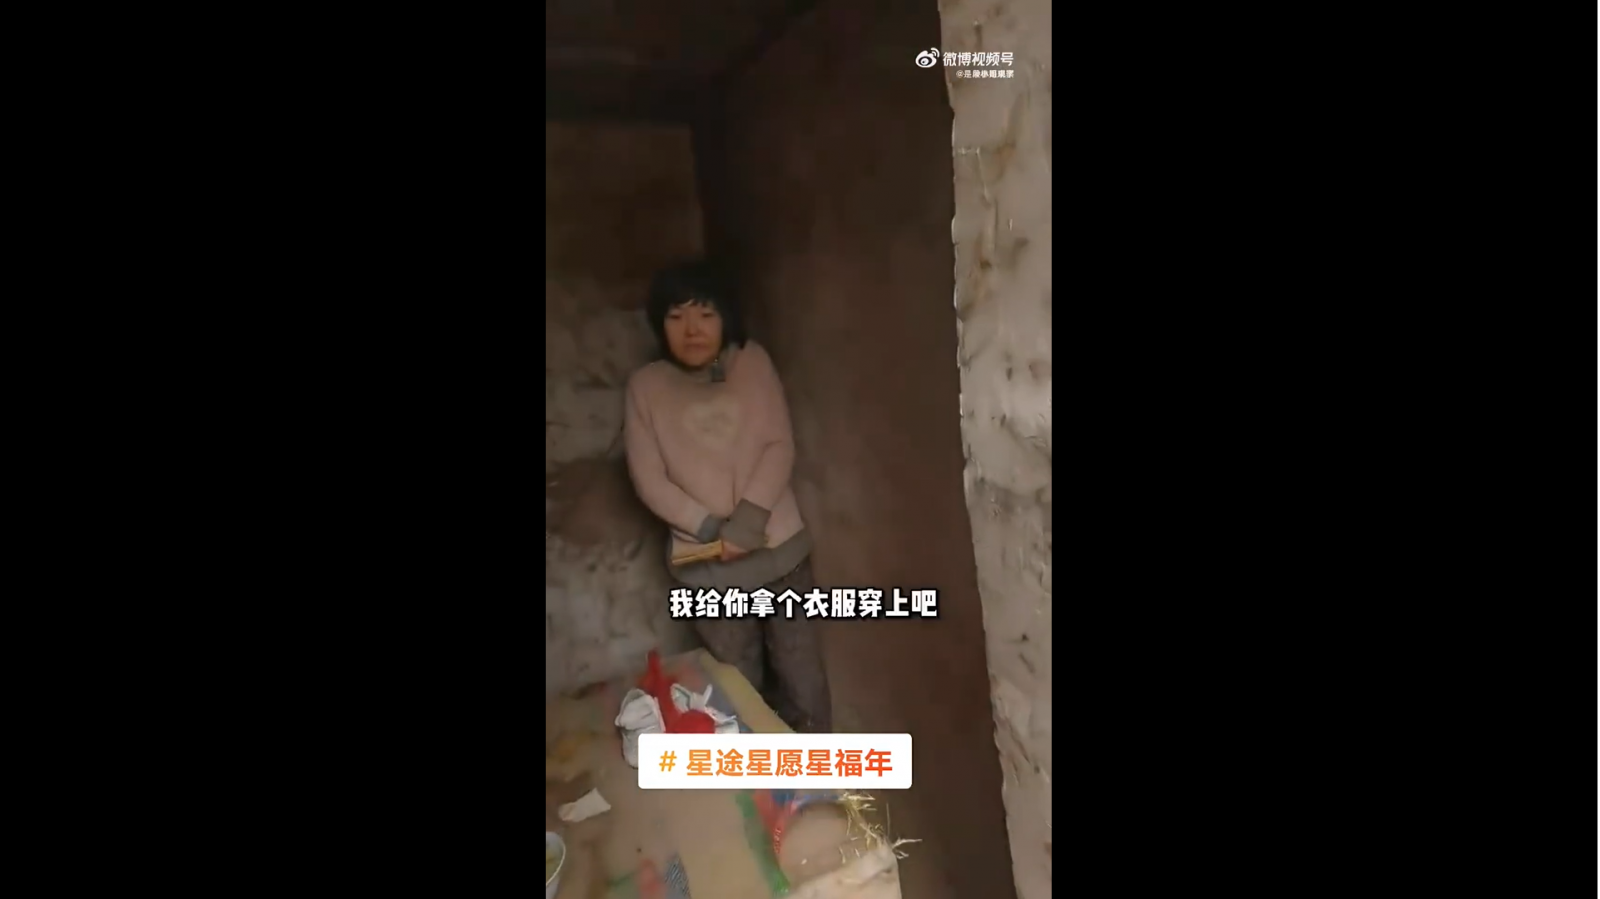 Visão Mulher acorrentada na China causa uma onda de debate sobre saúde mental e consentimento sexual